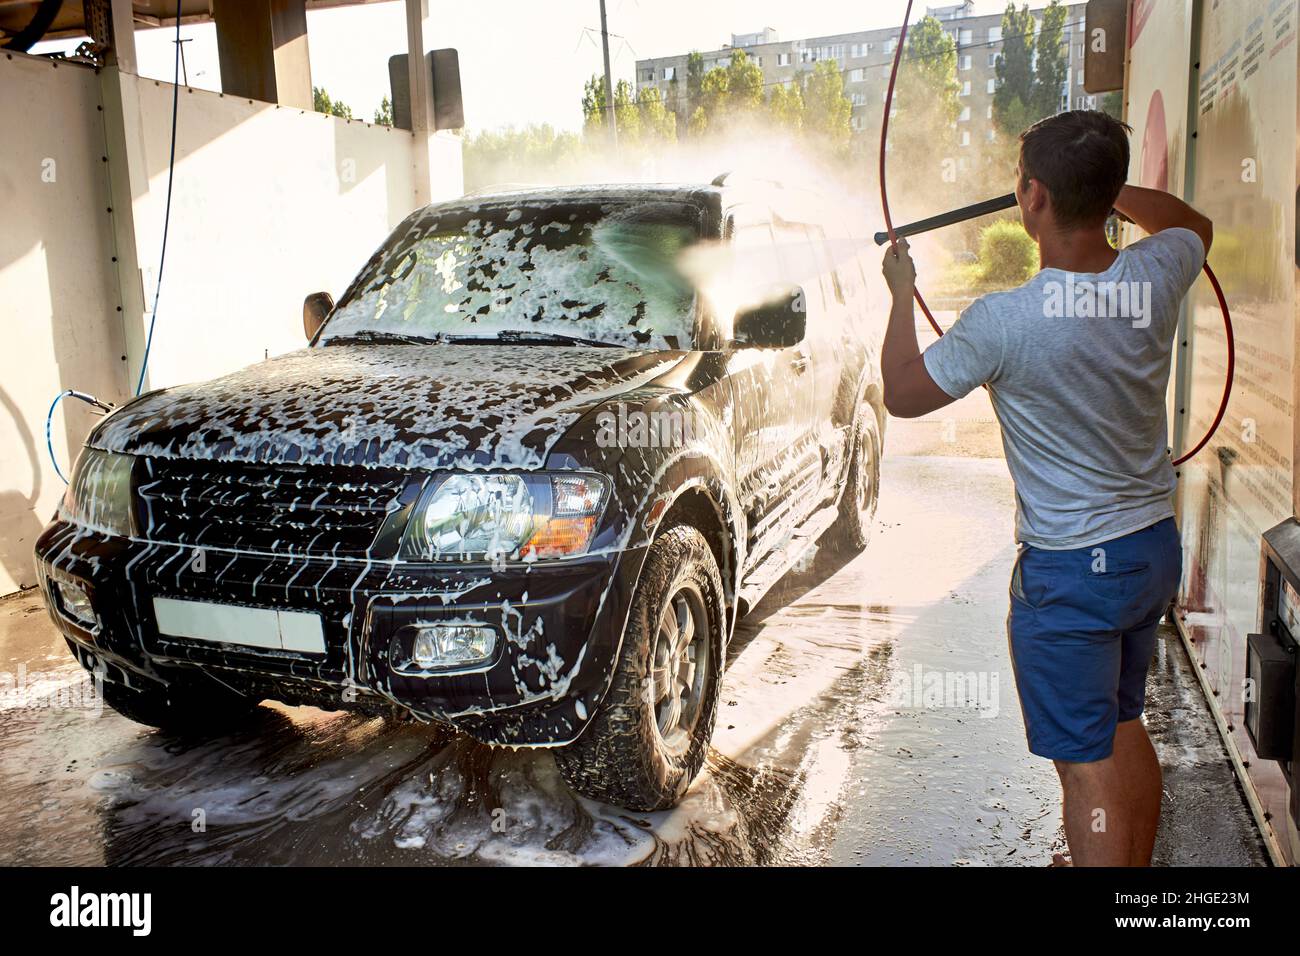 Ein schwarzer SUV-Wagen bei einer Autowaschanlage zur Selbstbedienung. Waschen Sie das Auto mit Ihren eigenen Händen. Ein schwarzes Auto in Reinigungsschaum. Ein Mann wäscht tagsüber sein Auto. Stockfoto